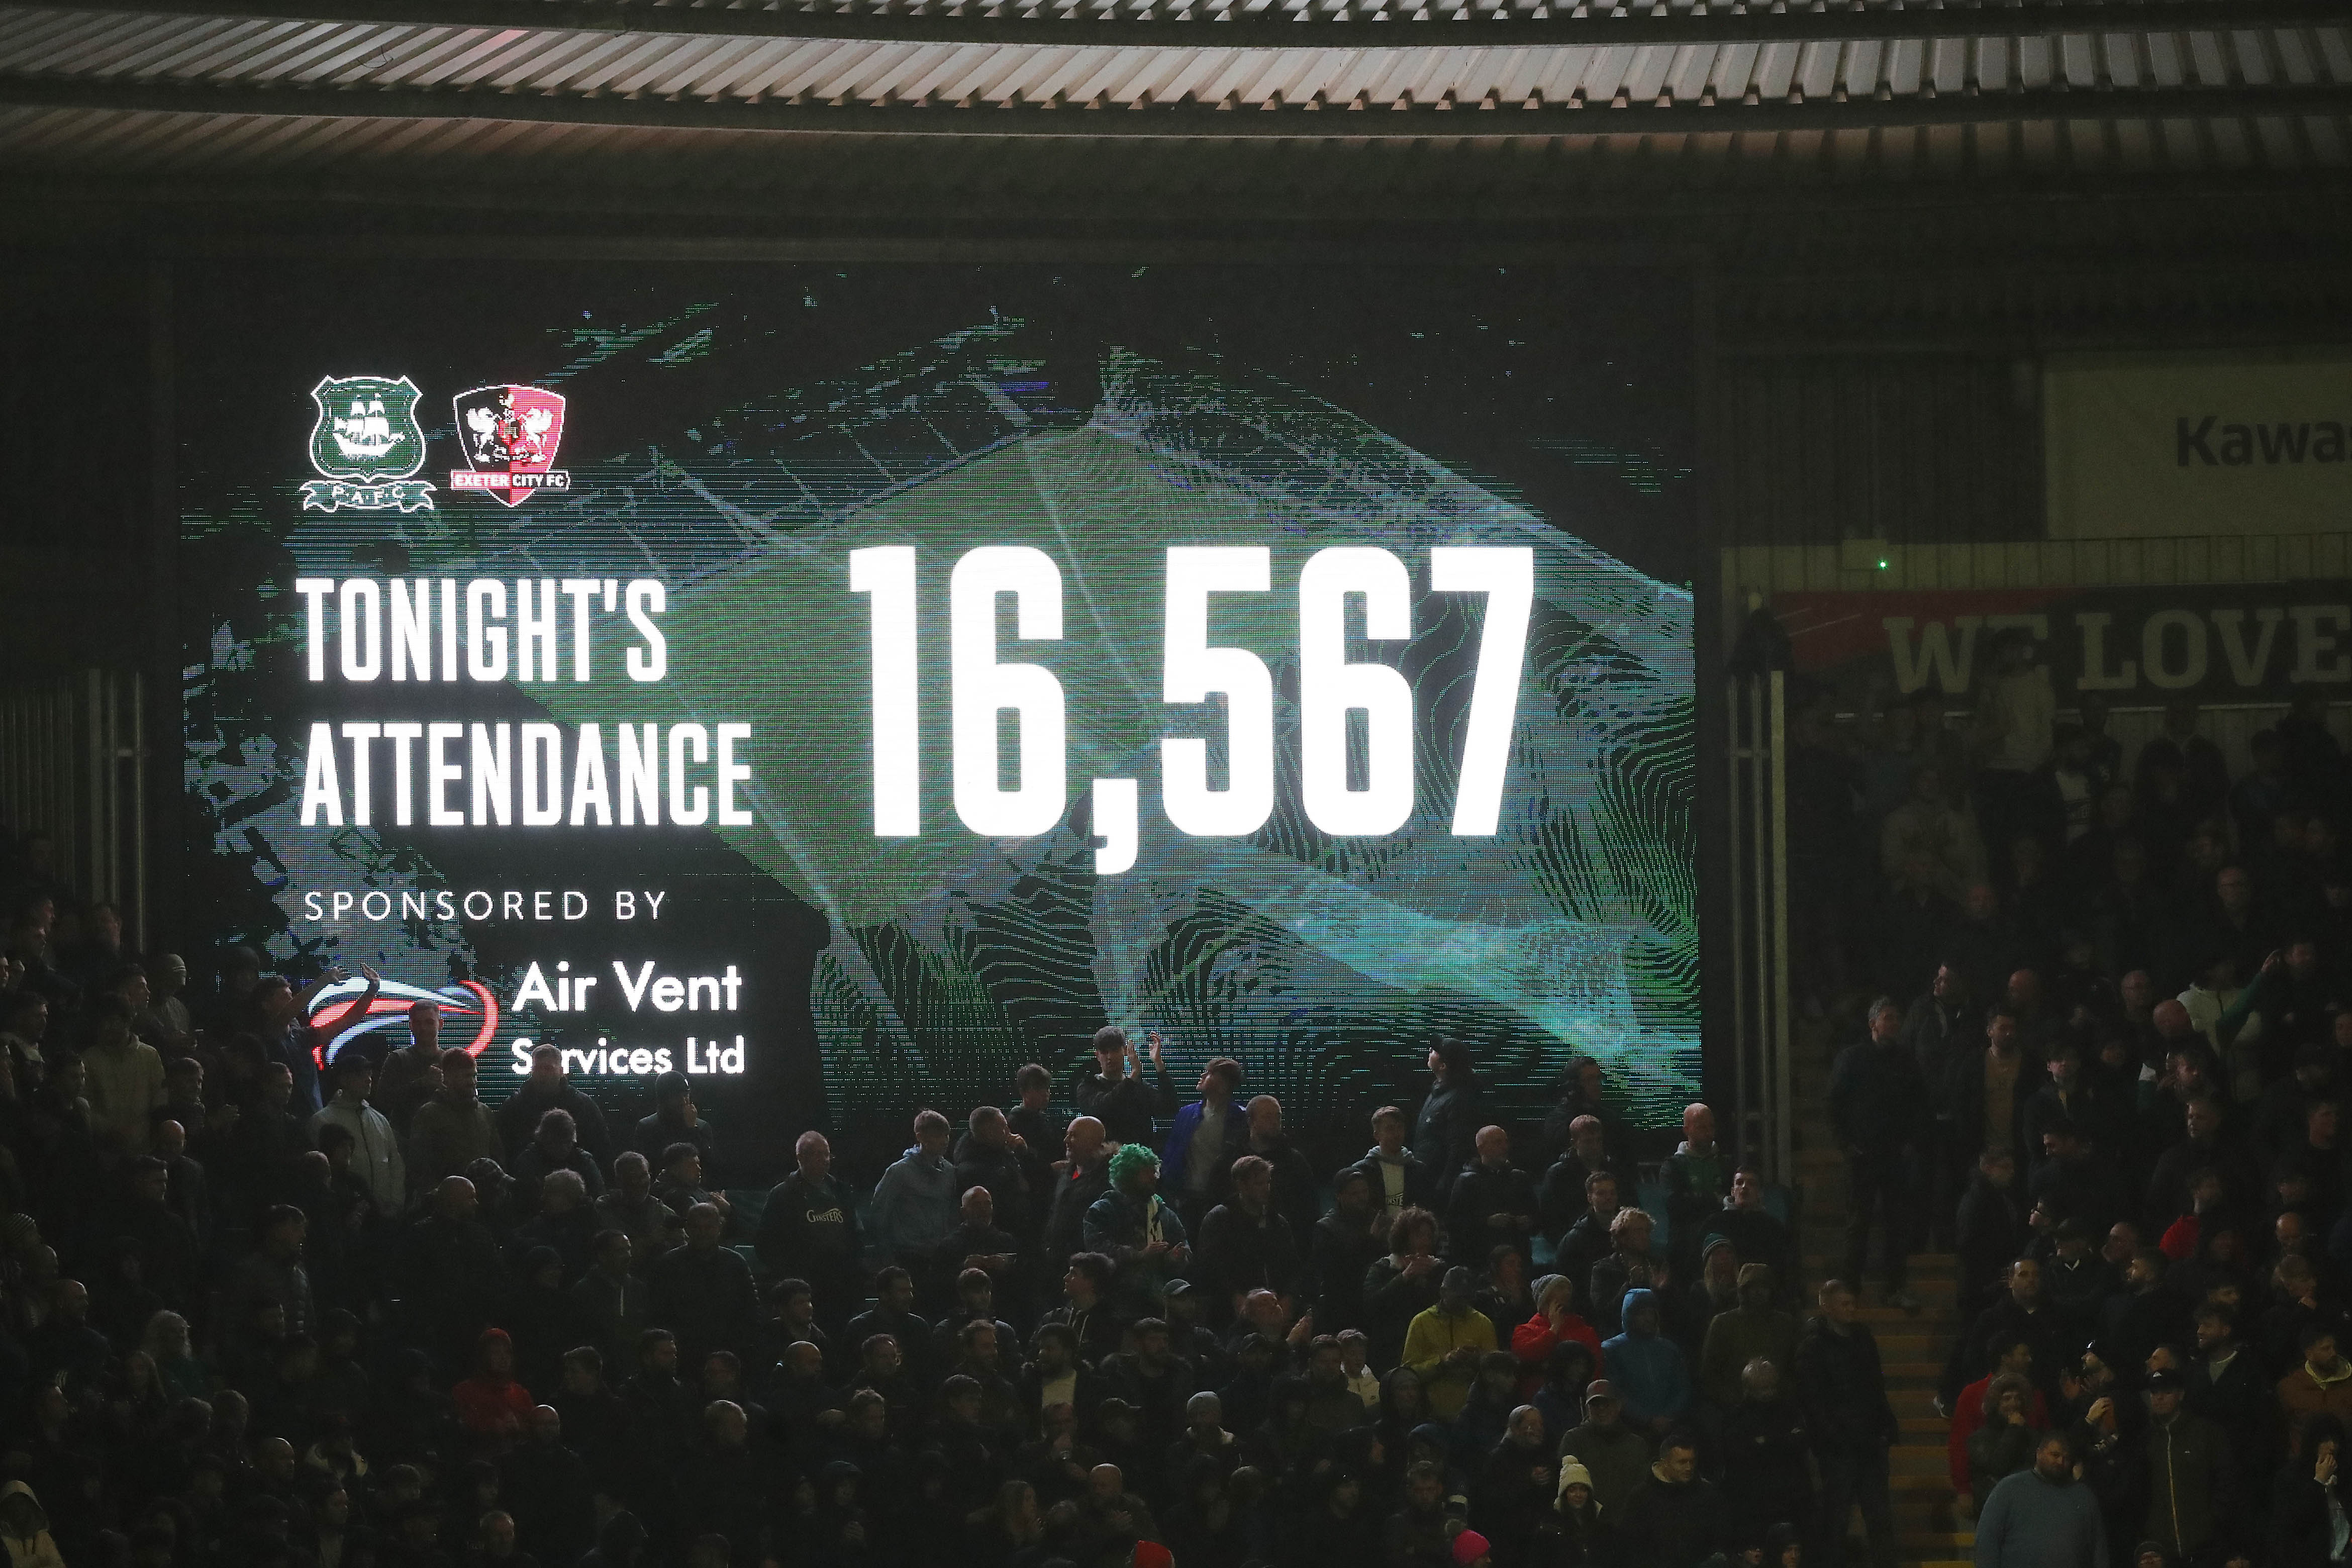 Big screen showing attendance at Devon derby